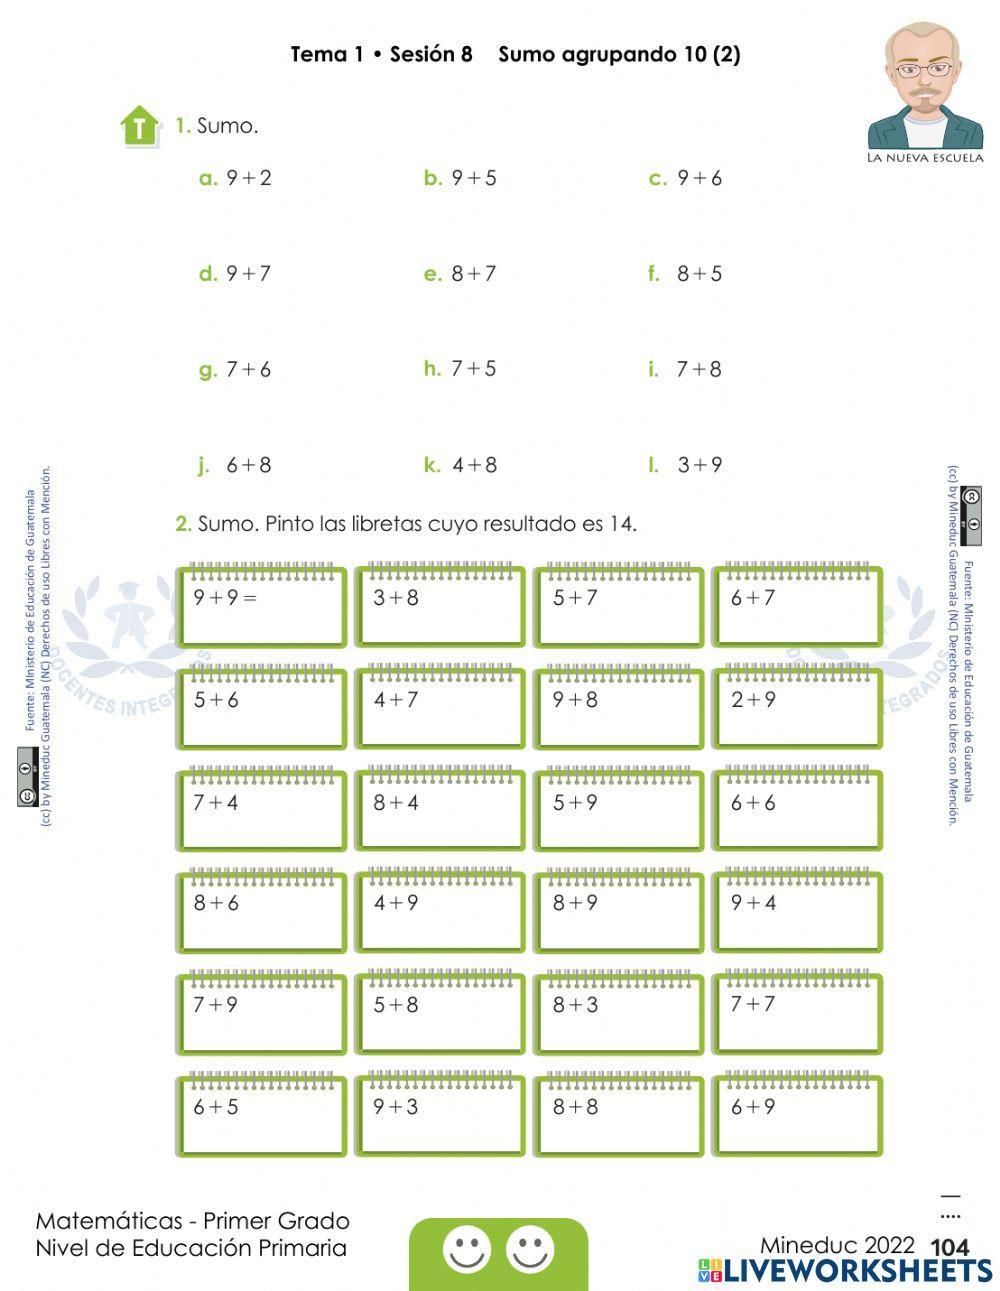 Matemáticas Primer Grado Mineduc 2022 pág. 104 - Sumo agrupando 10 (1) Tema 1 • Sesión 8